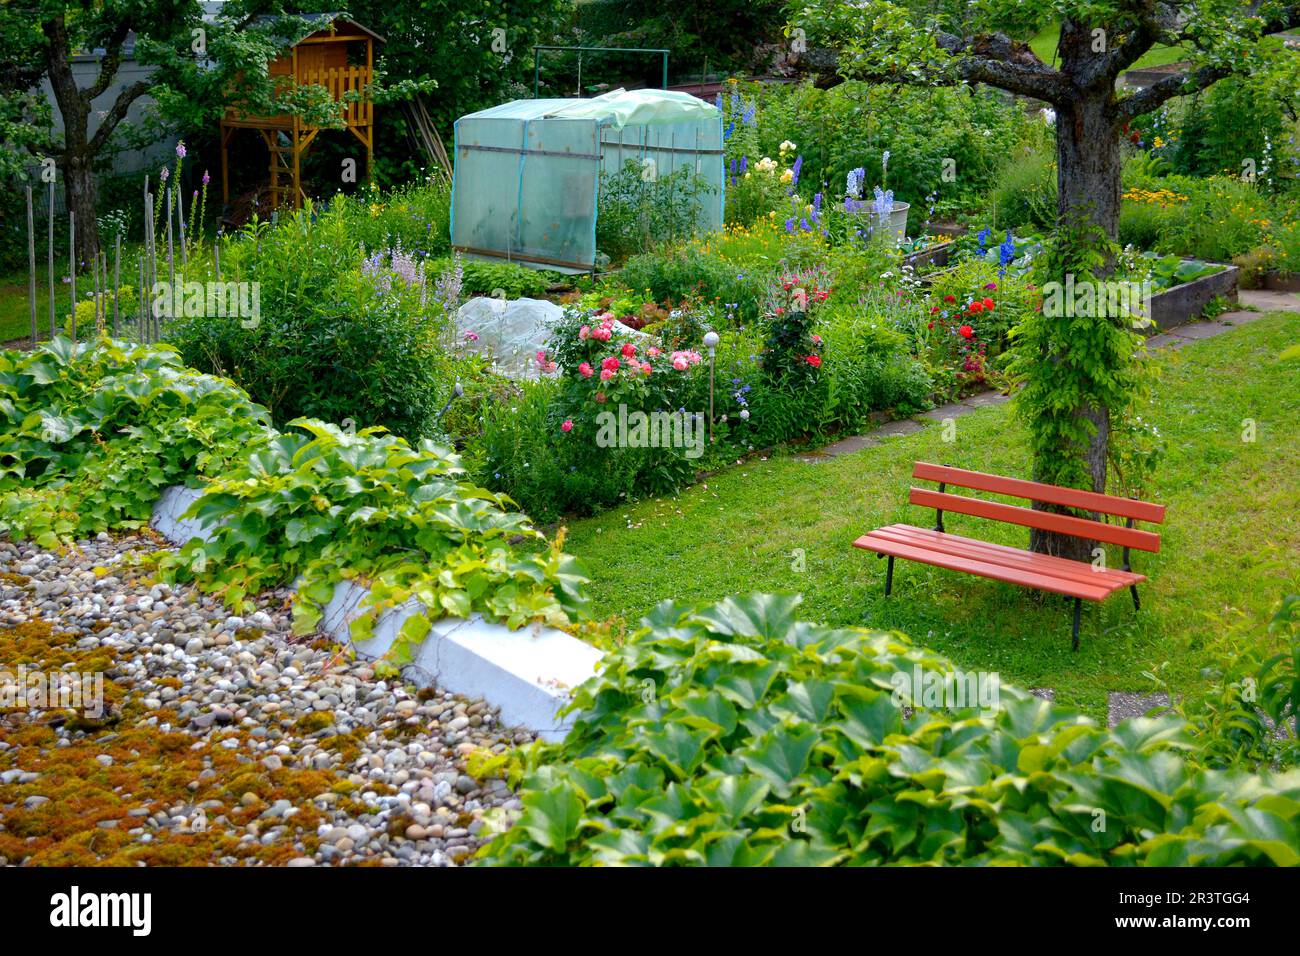 Jardín rural con banco de jardín Foto de stock